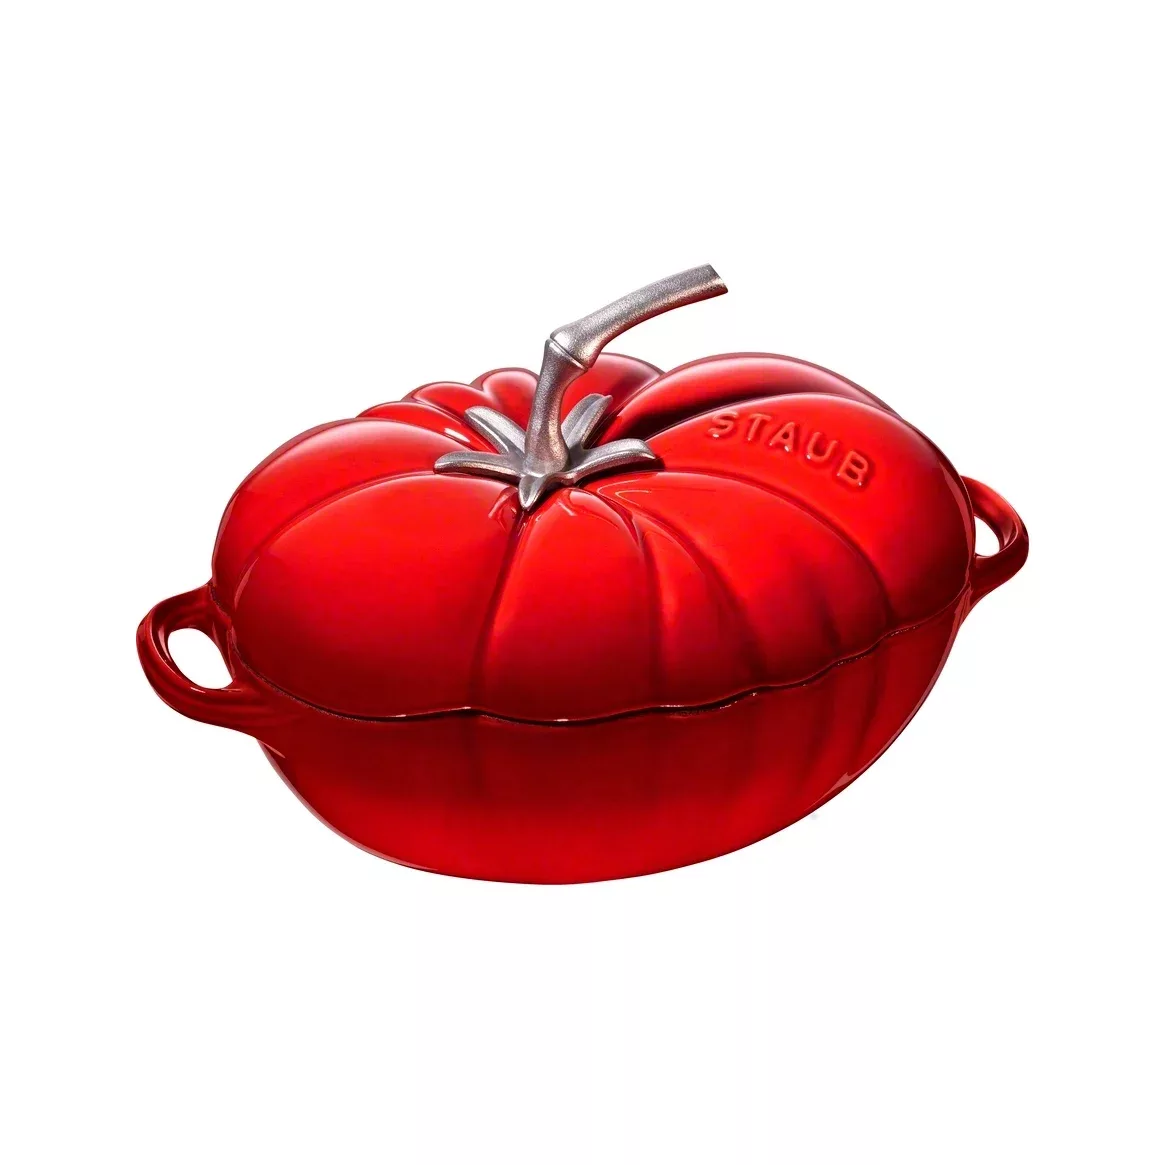 Staub Cocotte Tomate Bräter Oval Gusseisen Kirschrot 25cm günstig online kaufen